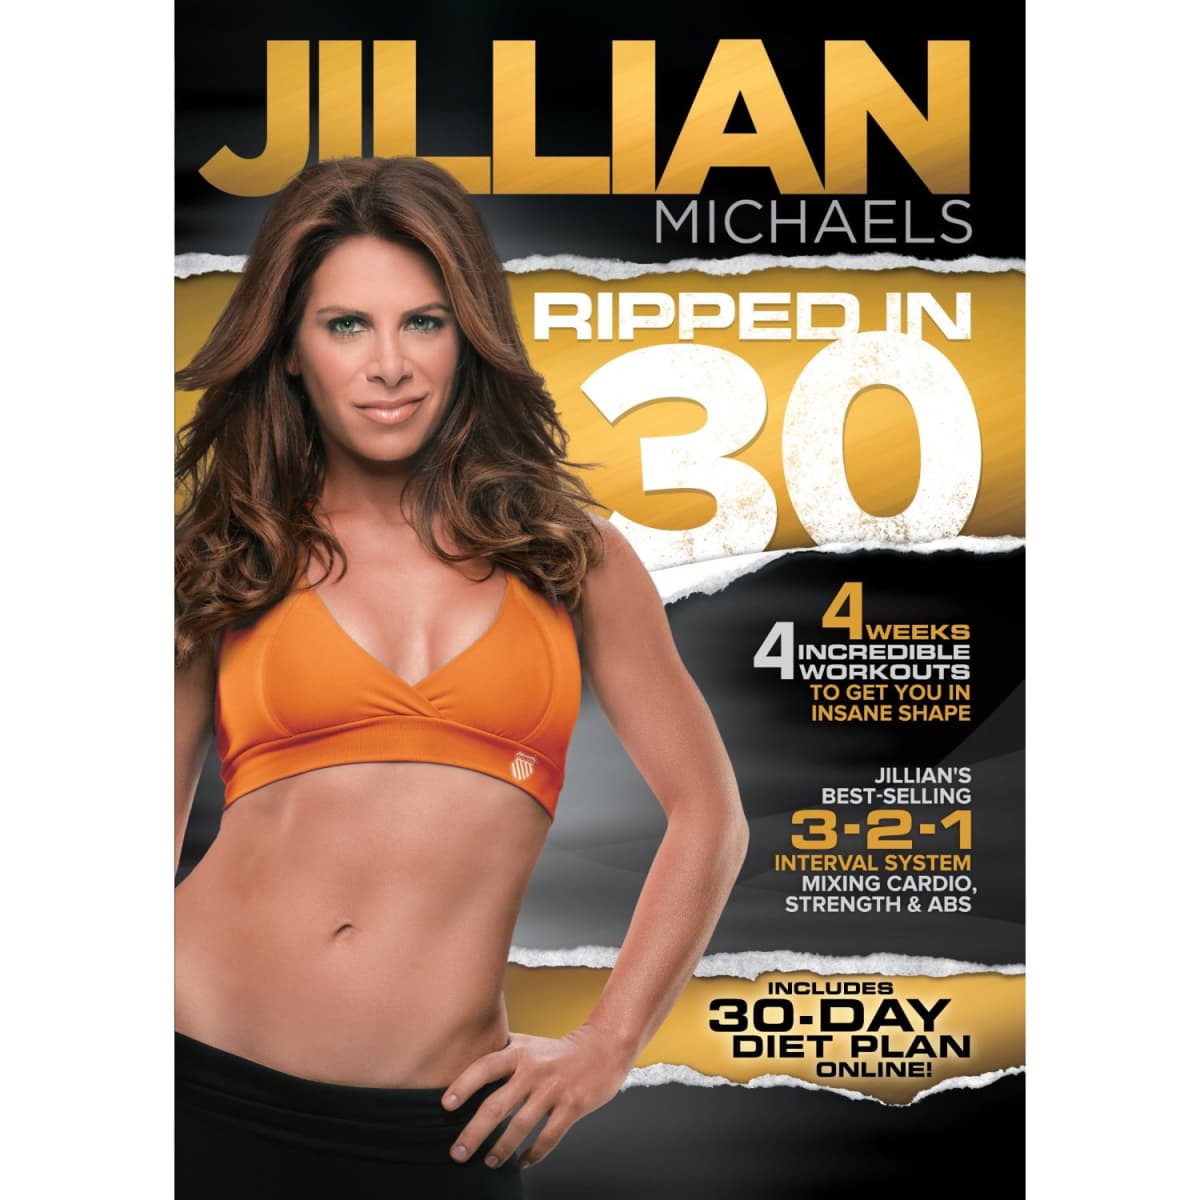 jillian michaels 30 day meal plan review